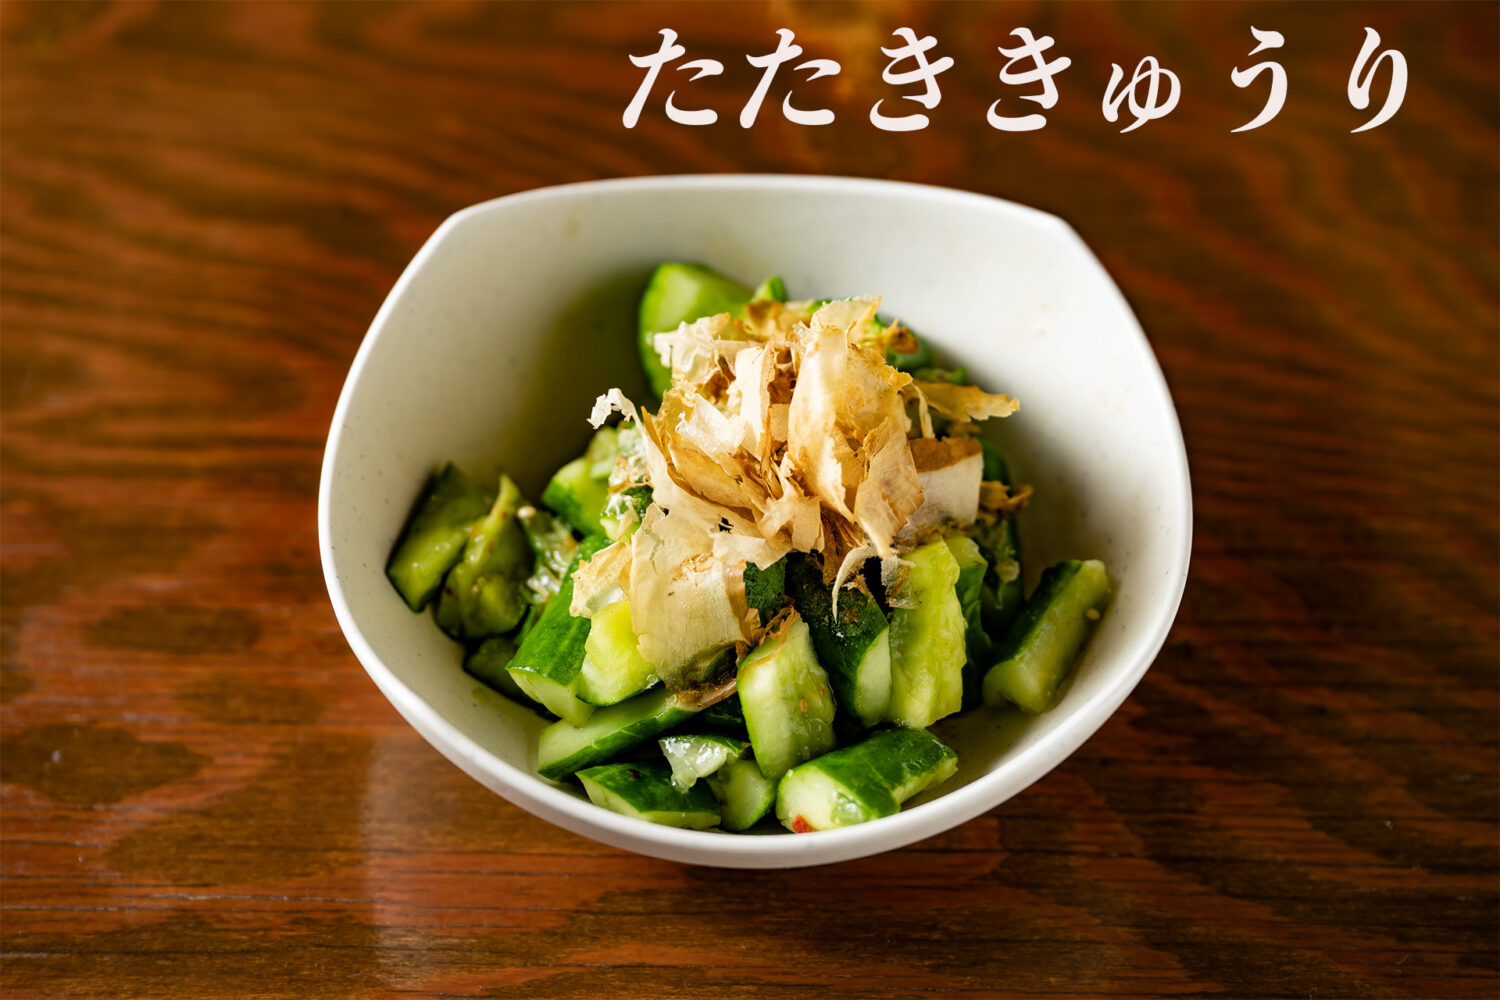 涼拌小黃瓜　たたききゅうり　tataki kyuri